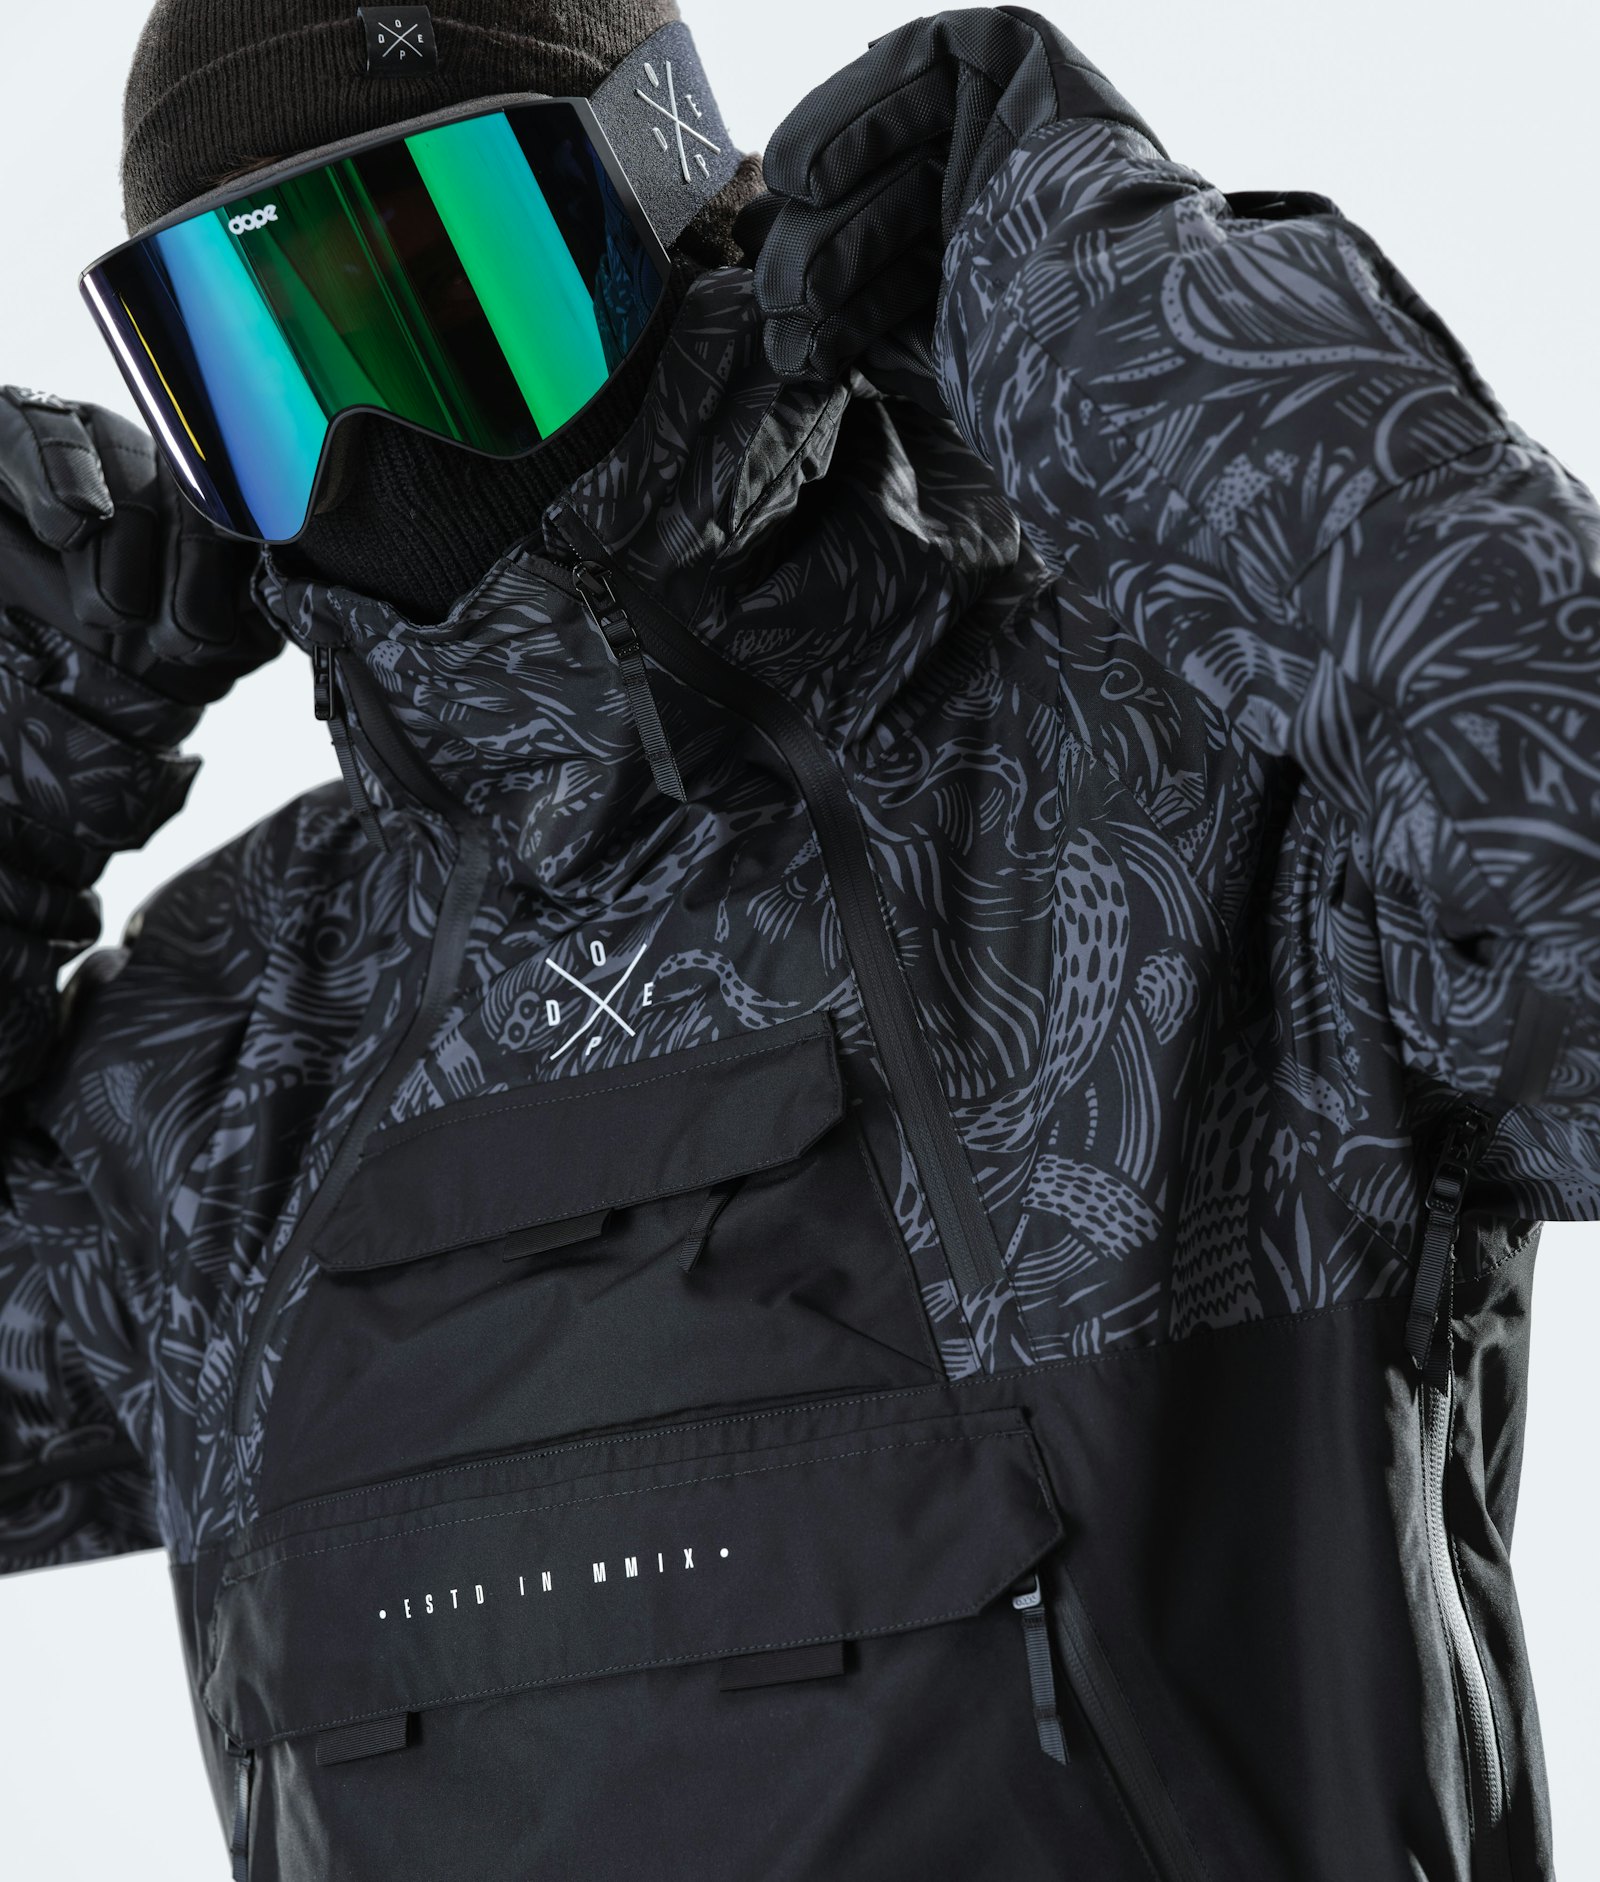 Akin 2020 スキージャケット メンズ Shallowtree/Black